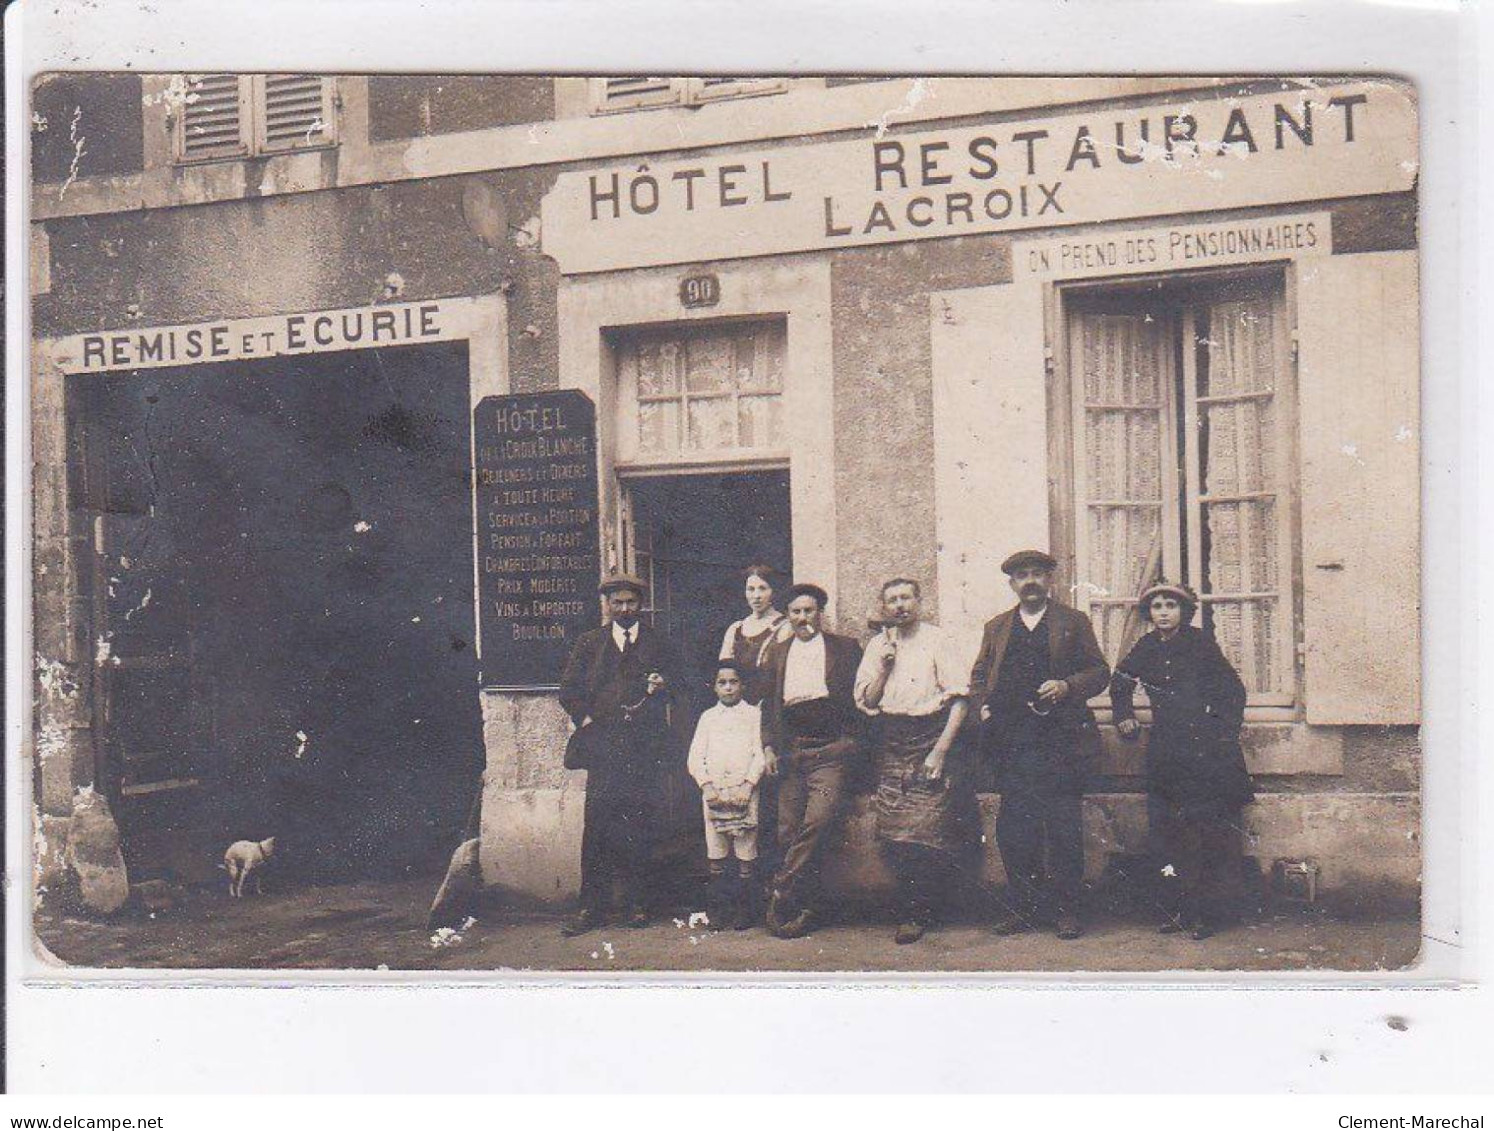 CHAMPDENIERS: Hôtel Restaurant Lacroix, Remise Et écurie - état - Champdeniers Saint Denis